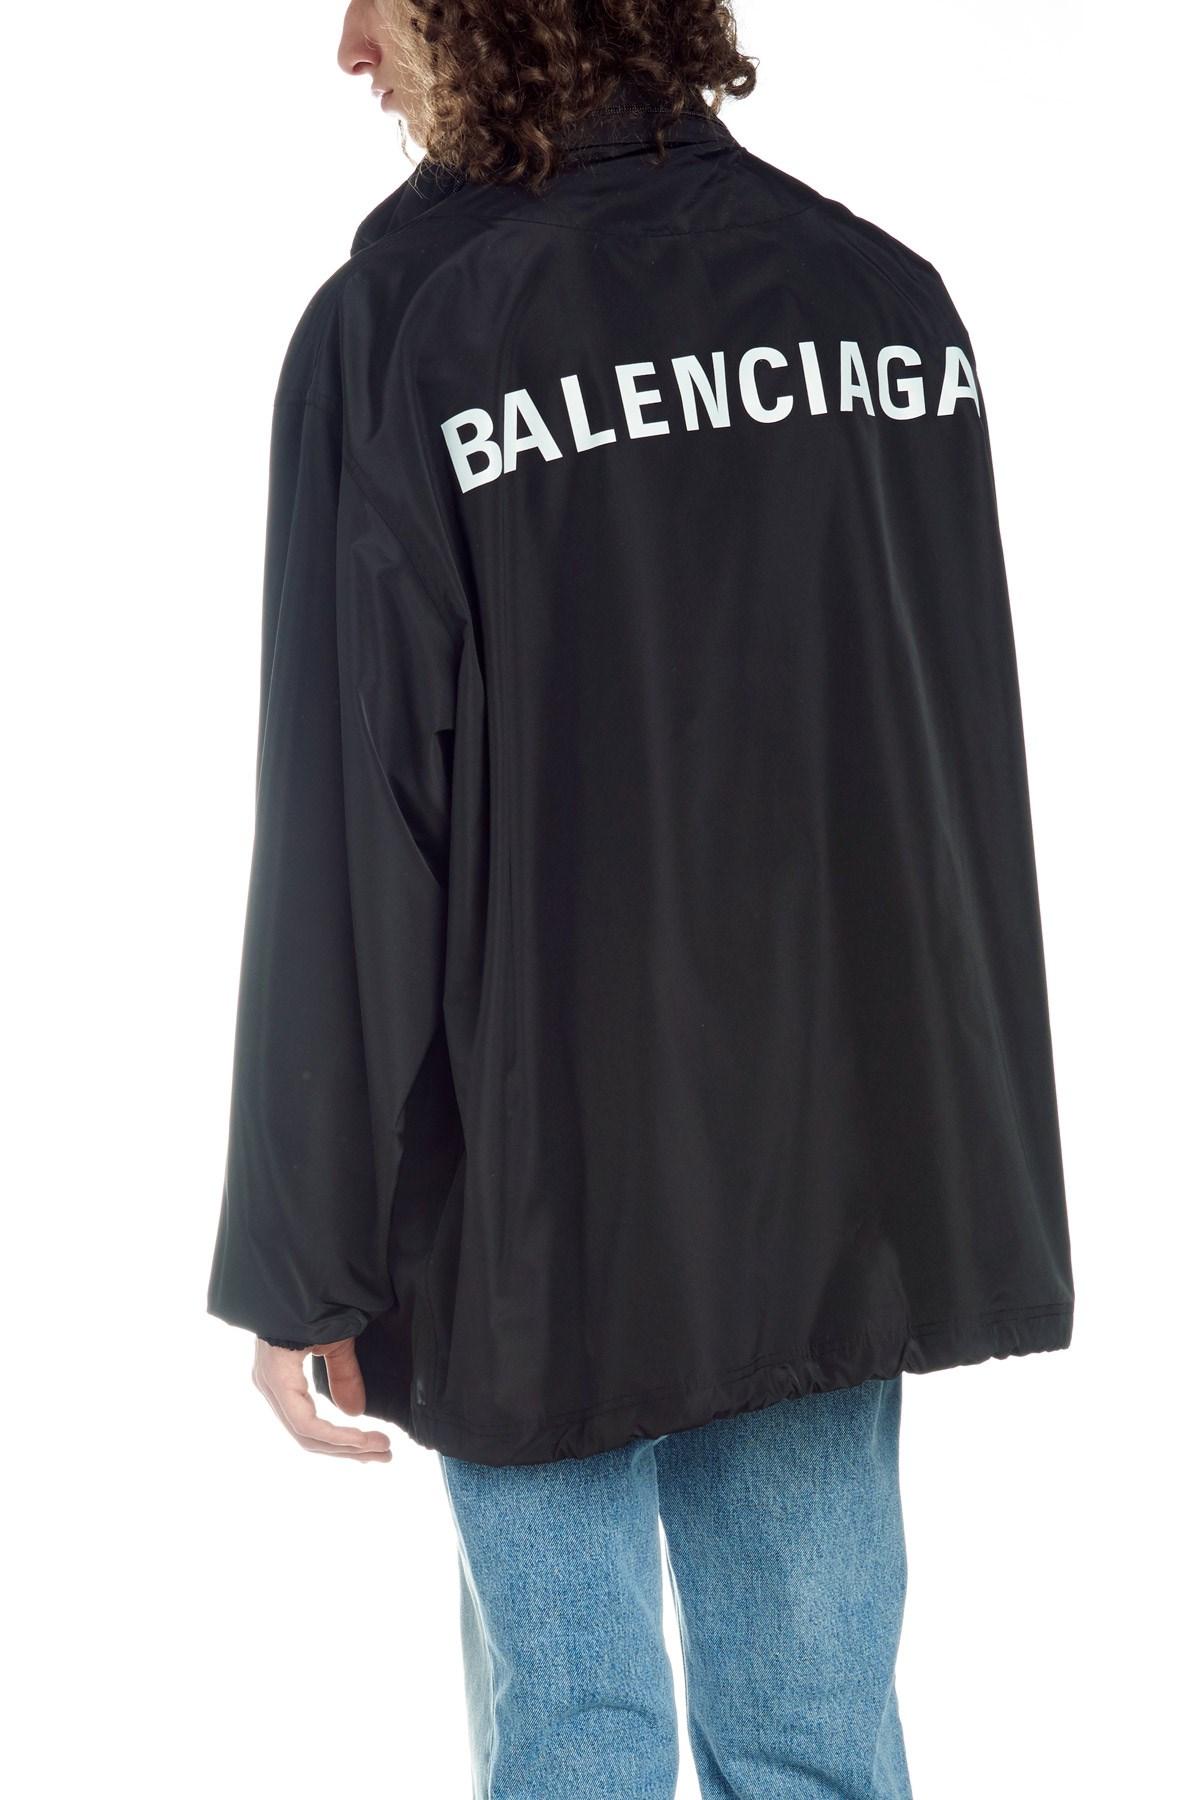 K Way Balenciaga on Sale, 51% OFF | www.colegiogamarra.com